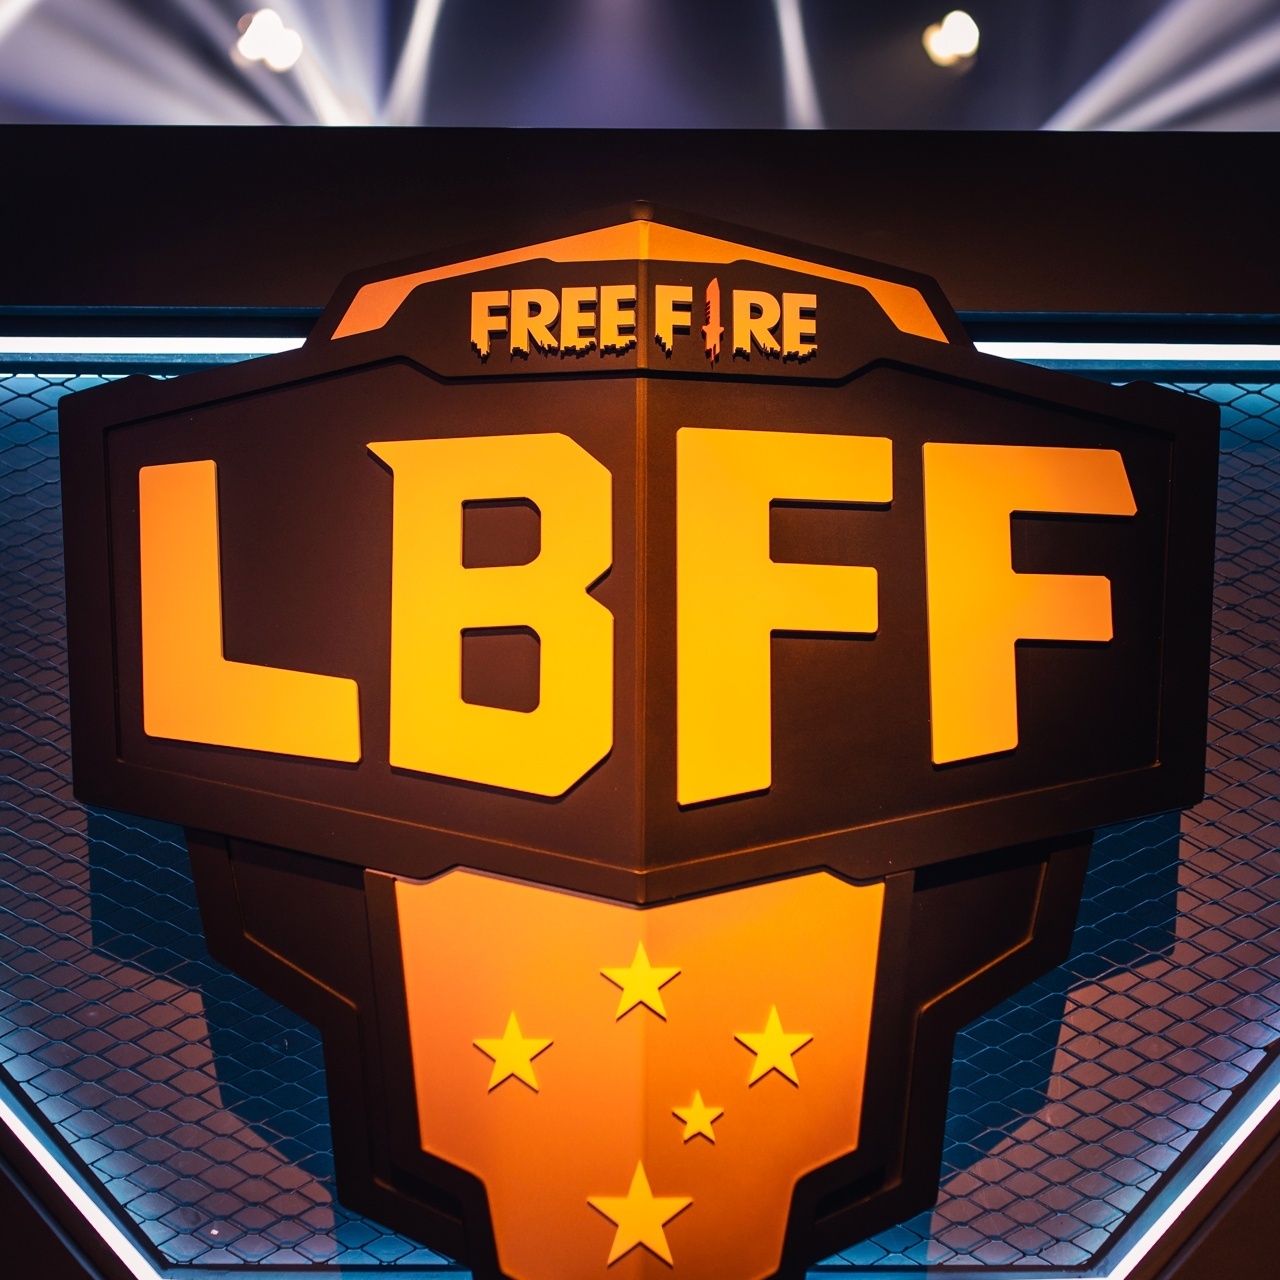 LBFF 2022: Guia para finais das séries B e C, free fire